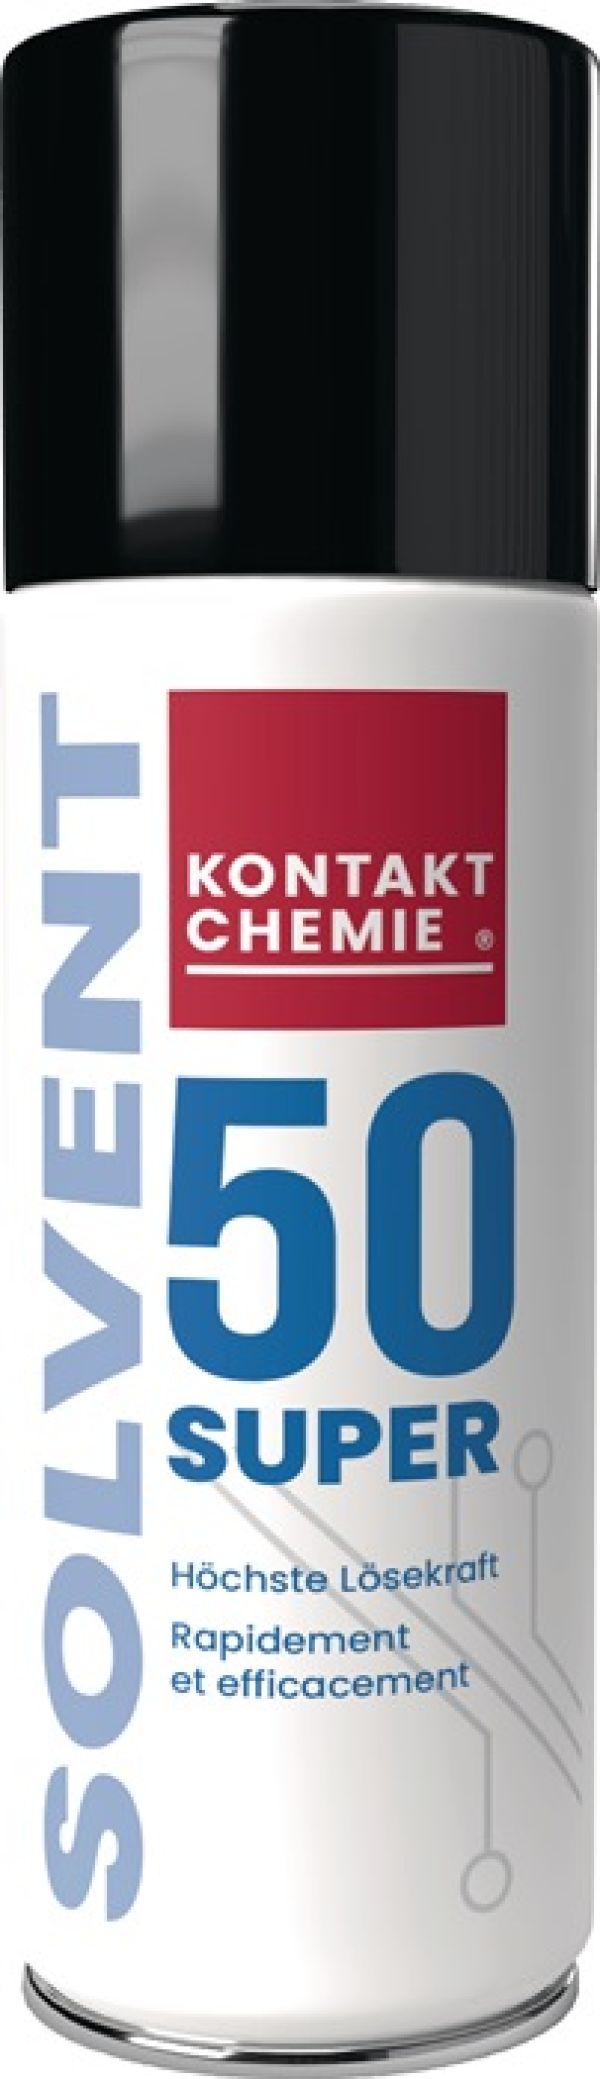 Etikettenlöser SOLVENT 50 SUPER 200ml Spraydose KONTAKT CHEMIE